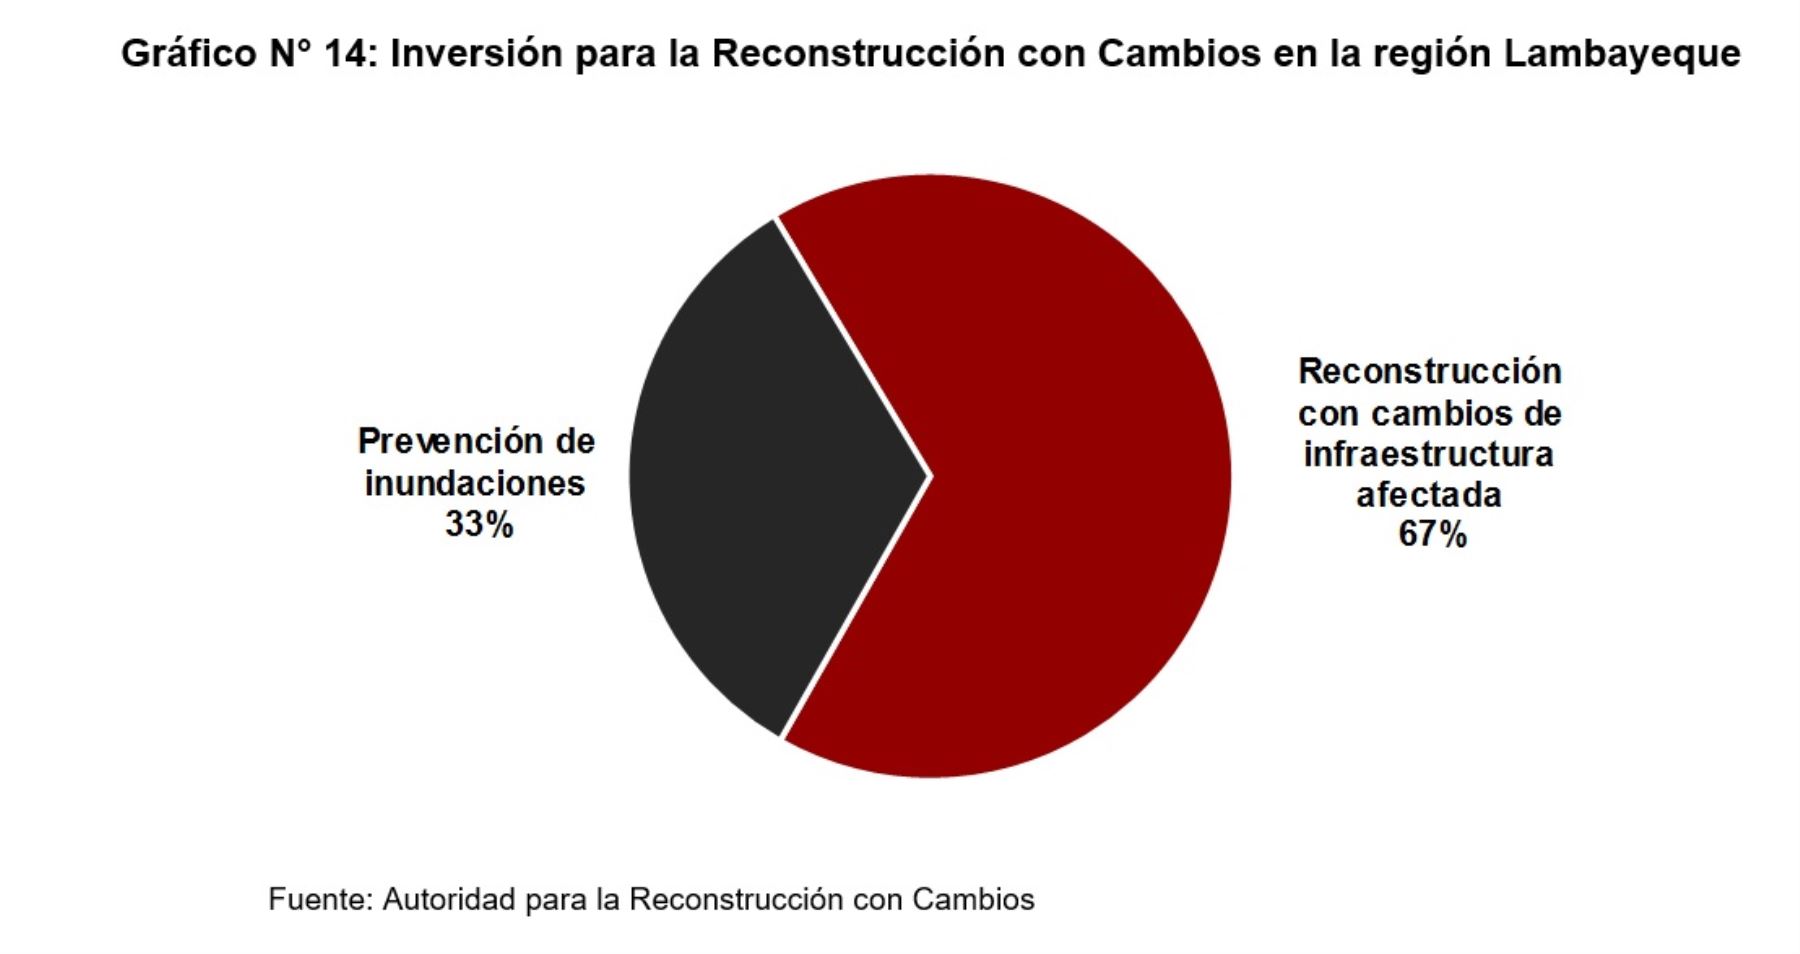 Inversión para la Reconstrucción con Cambios en la región Lambayeque, según la versión definitiva del Plan Integral de la Reconstrucción con Cambios 2017.